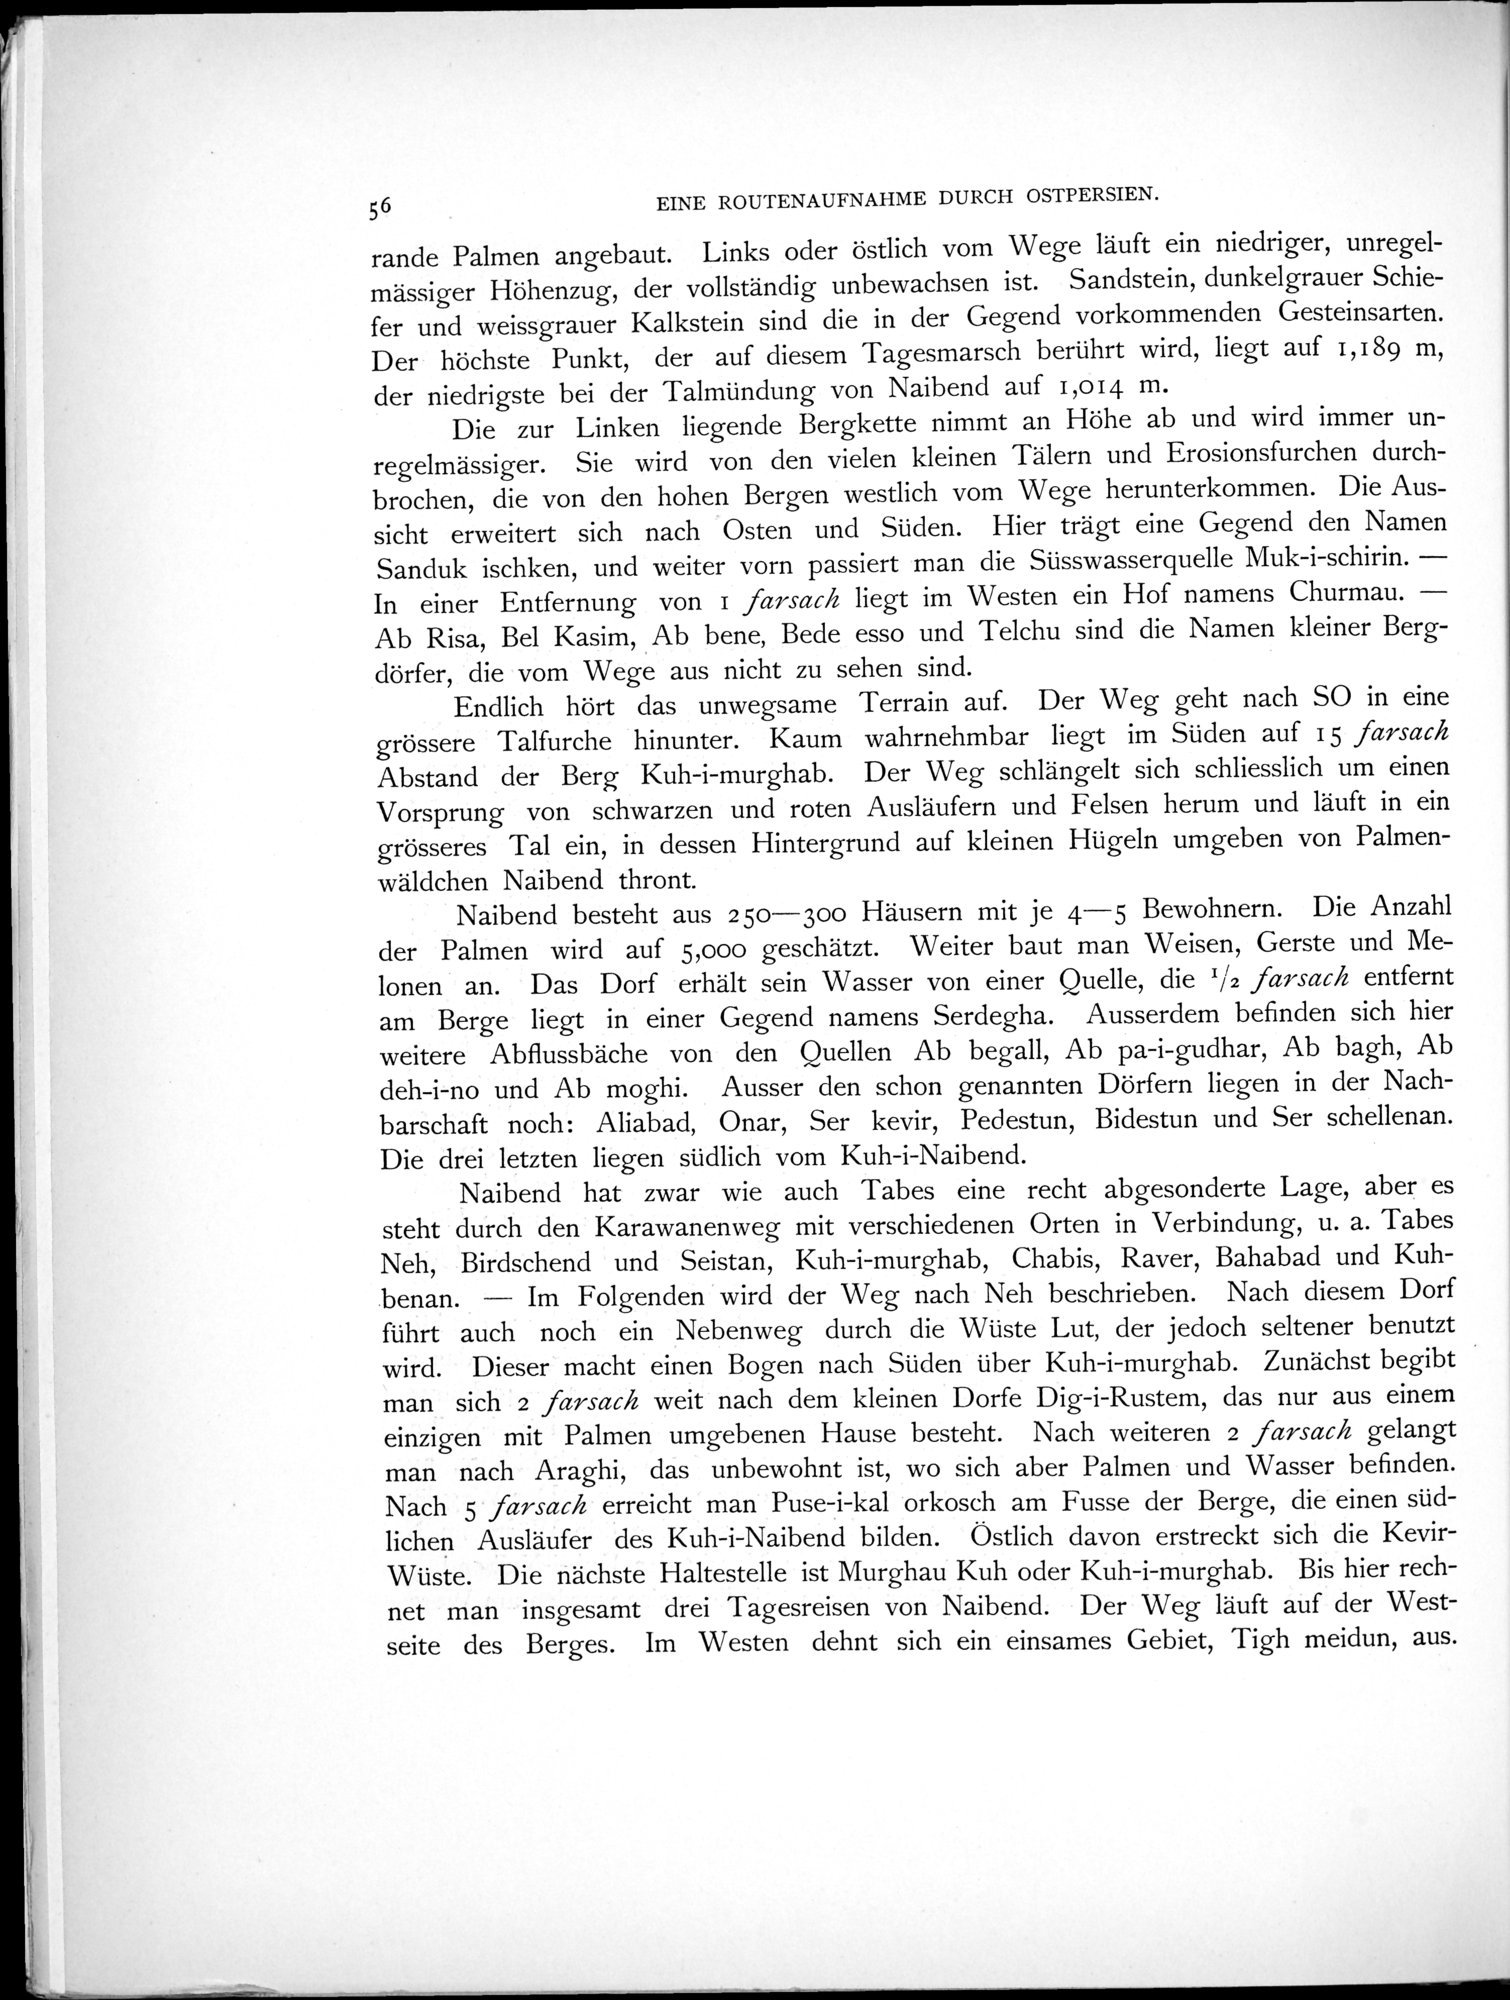 Eine Routenaufnahme durch Ostpersien : vol.1 / Page 188 (Grayscale High Resolution Image)